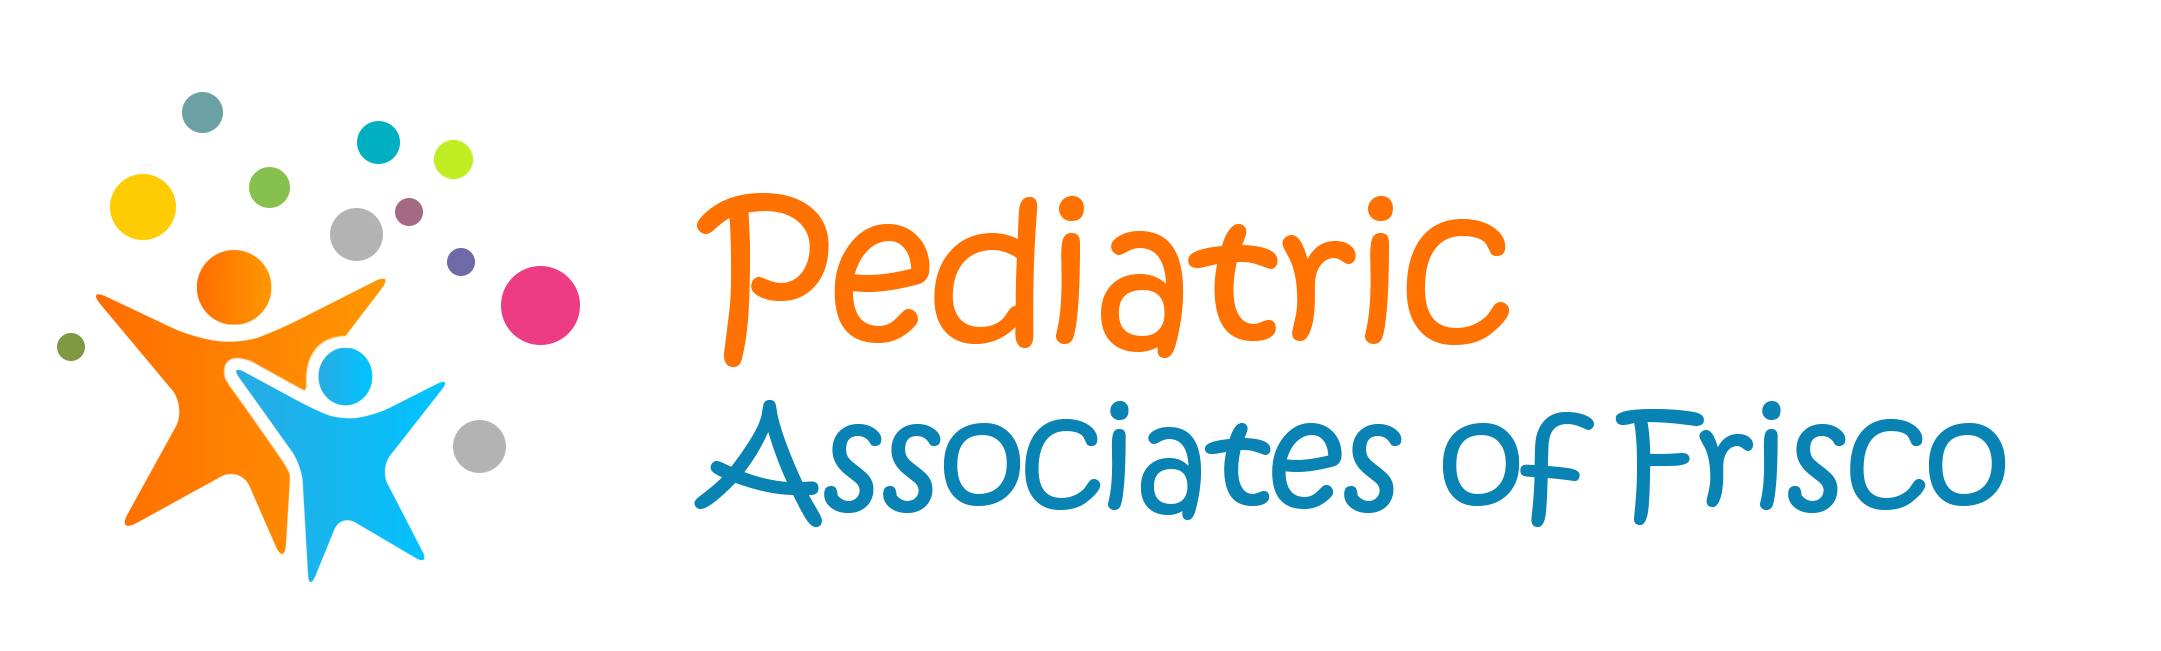 Pediatric Associates of Frisco